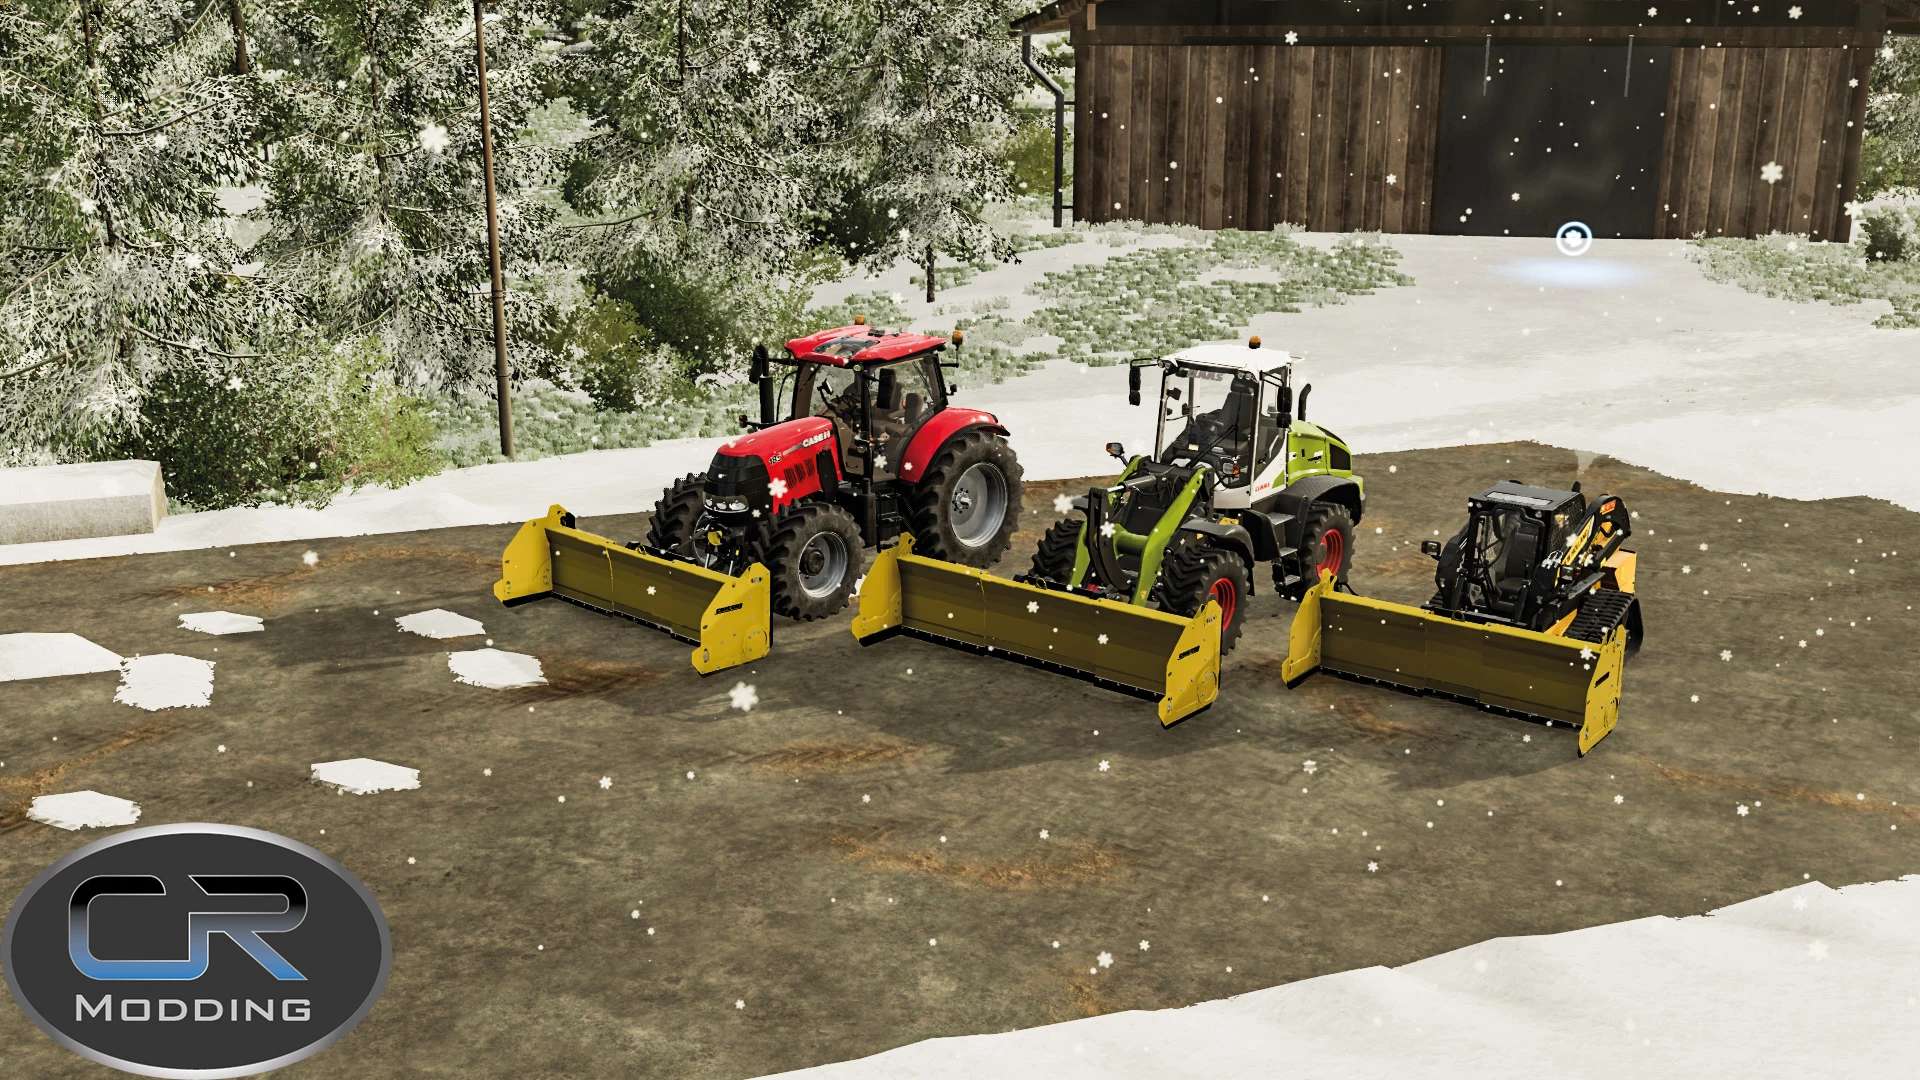 Cotech Ppcr Snow Plow V1000 For Fs22 Farming Simulator 2022 19 Mod 9336